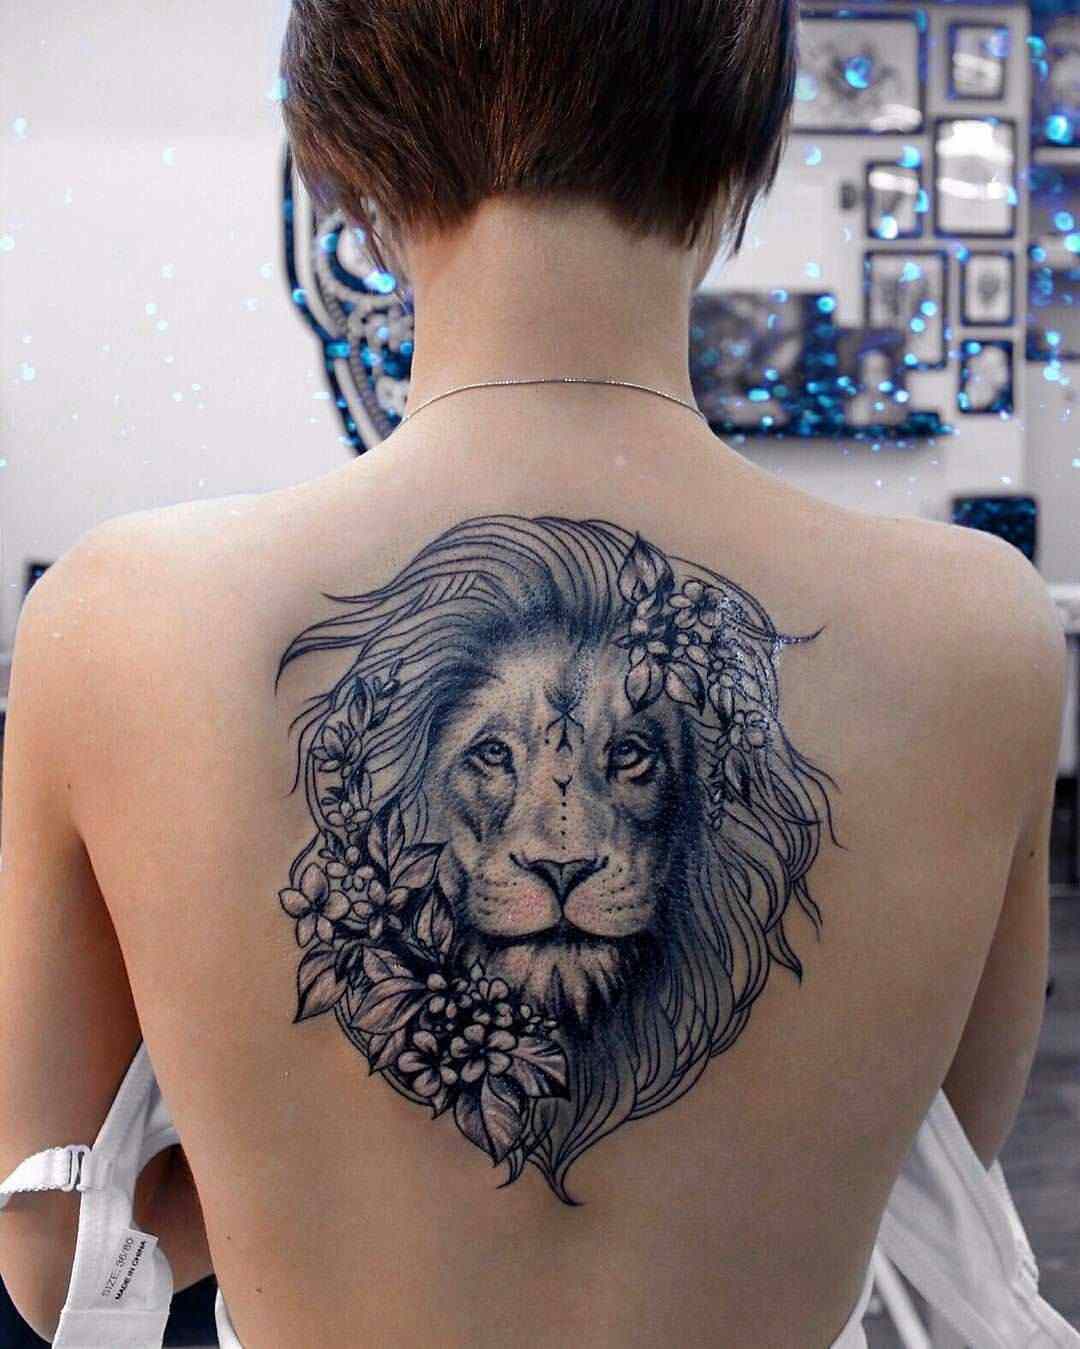 Zodiac tattoo lejon tillbaka tatuering idéer kvinnor tatuering design tatuering trender